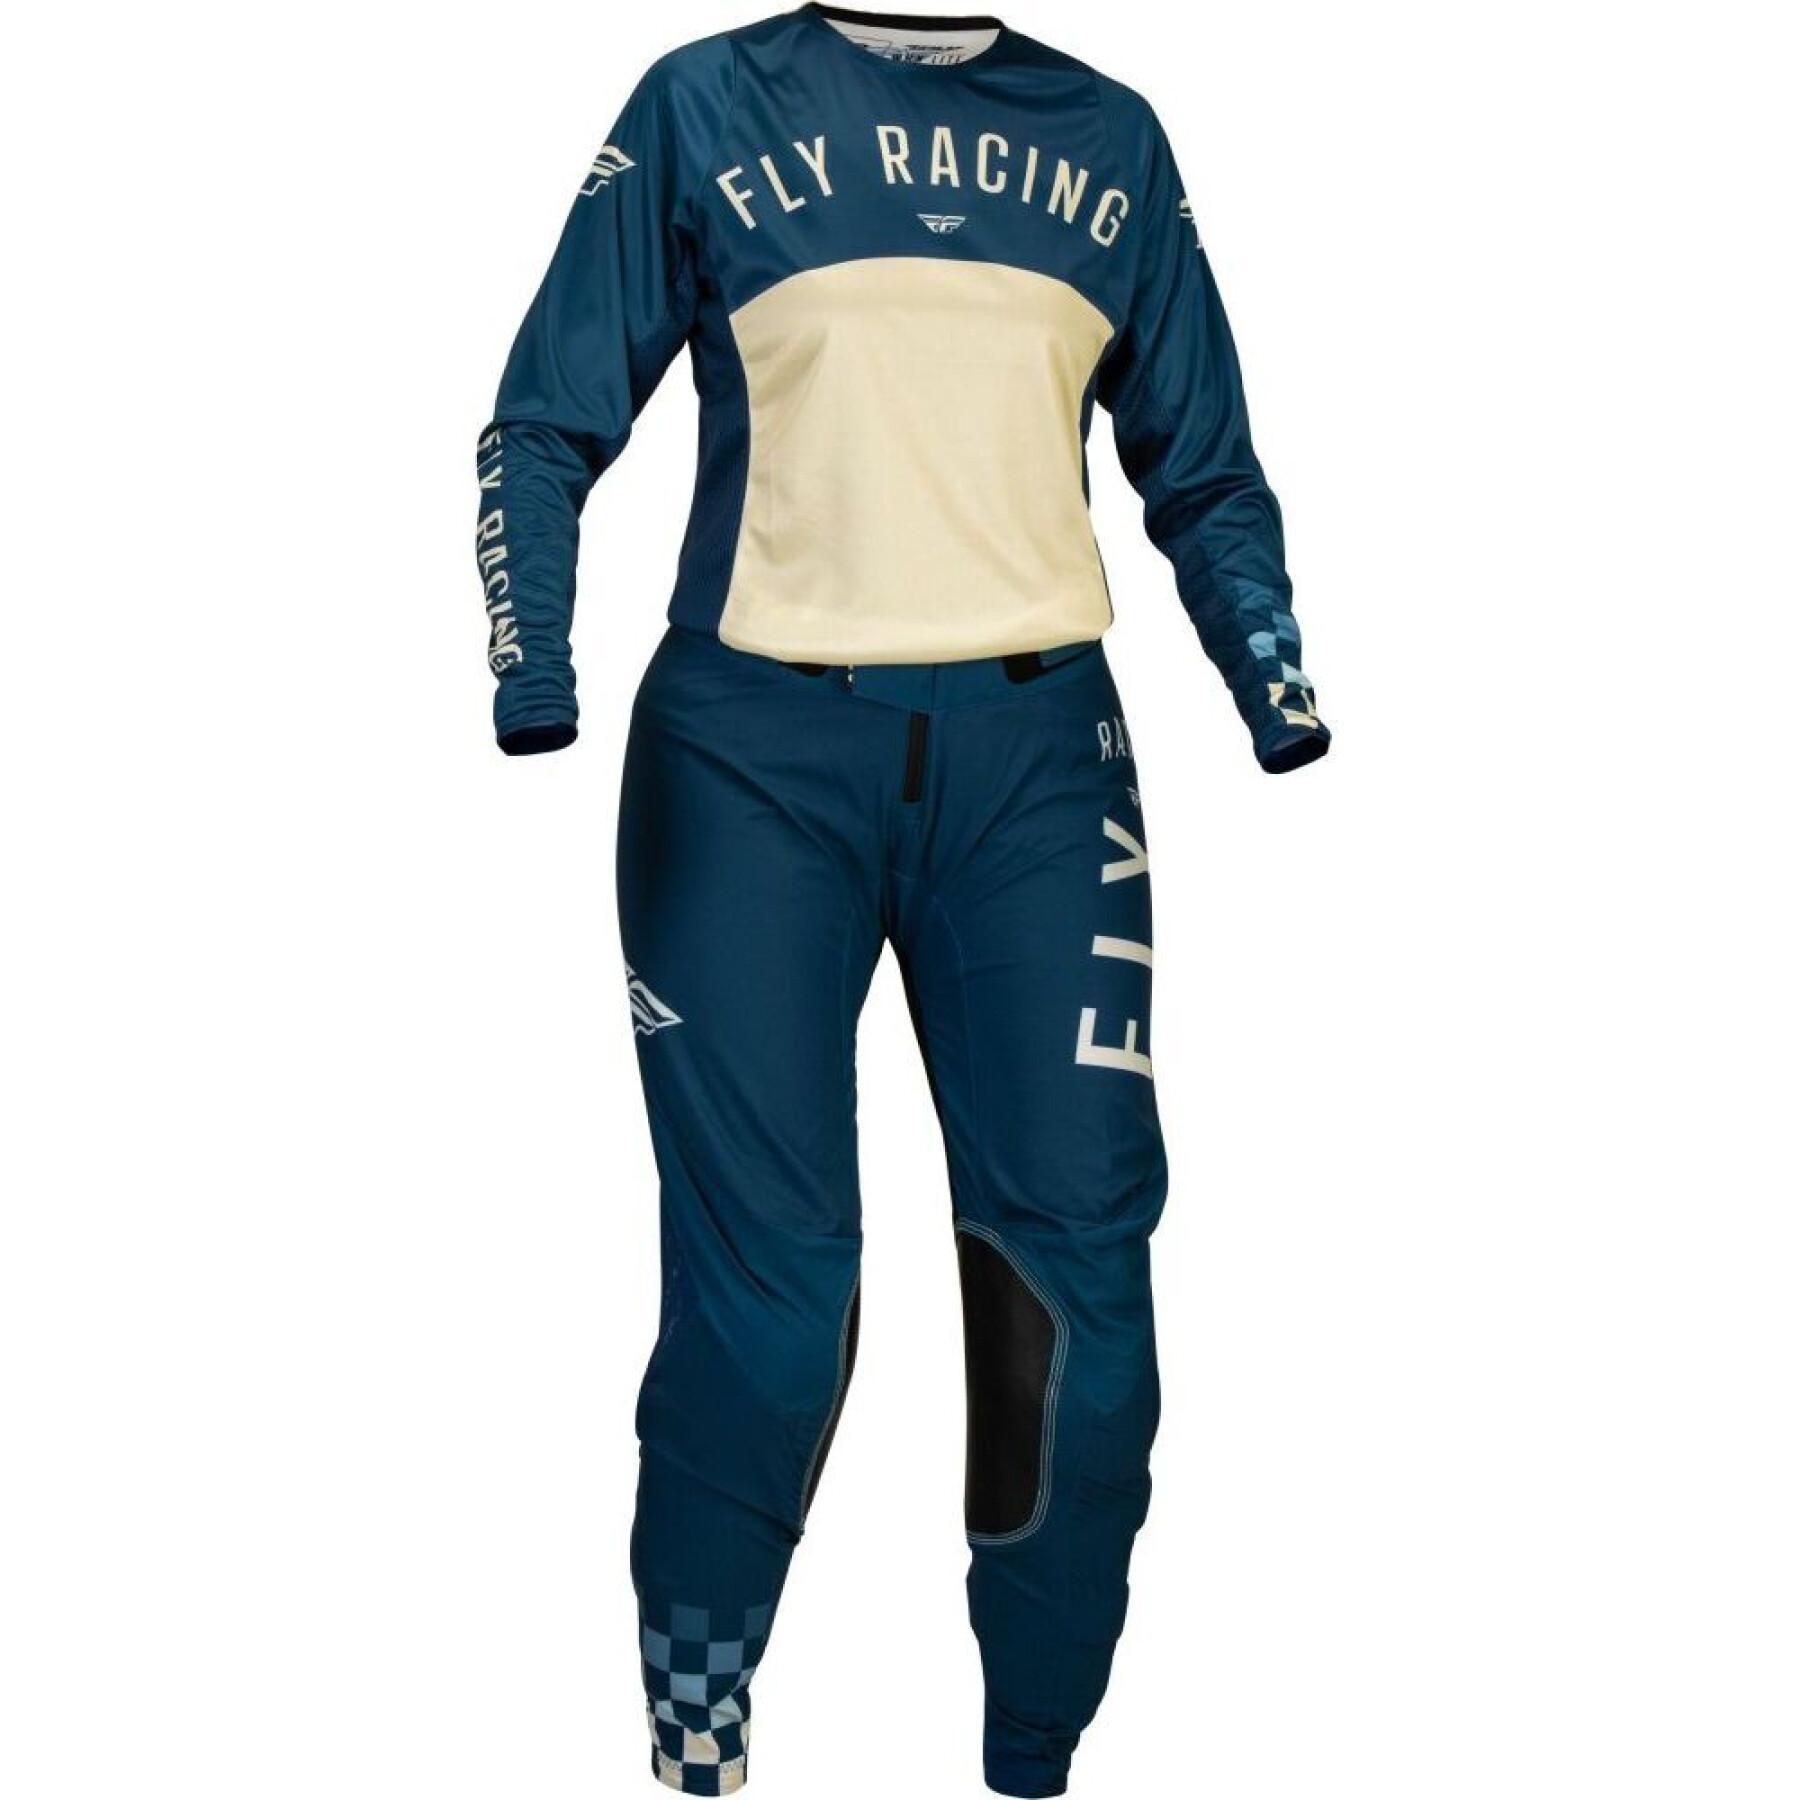 Pantaloni da motocross da donna Fly Racing Lite